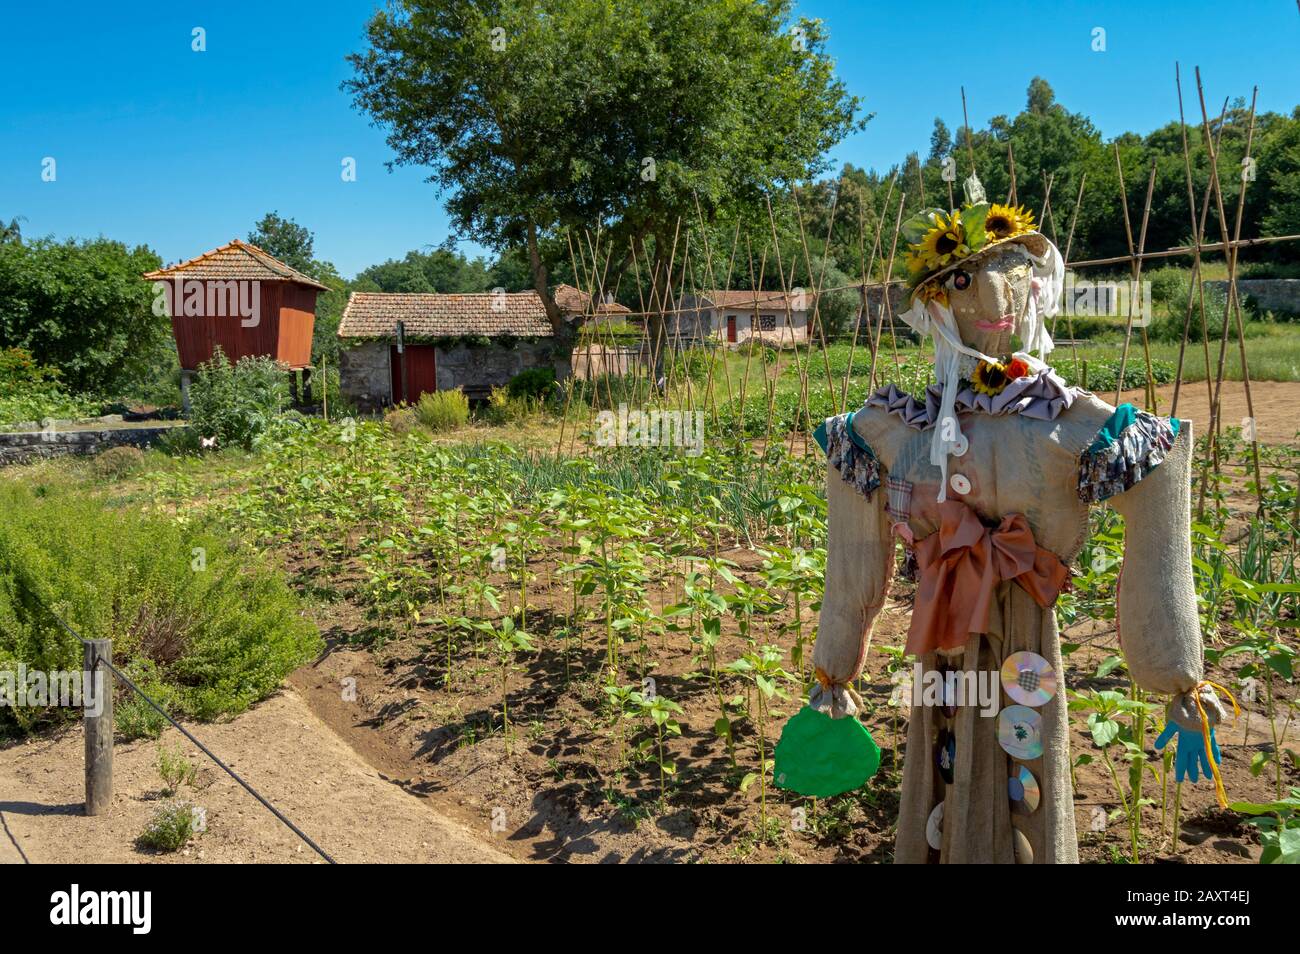 Scarecrow gardait le jardin potager de la ferme de Santo Tusso dans le parc biologique de Gaia, Portugal. Banque D'Images